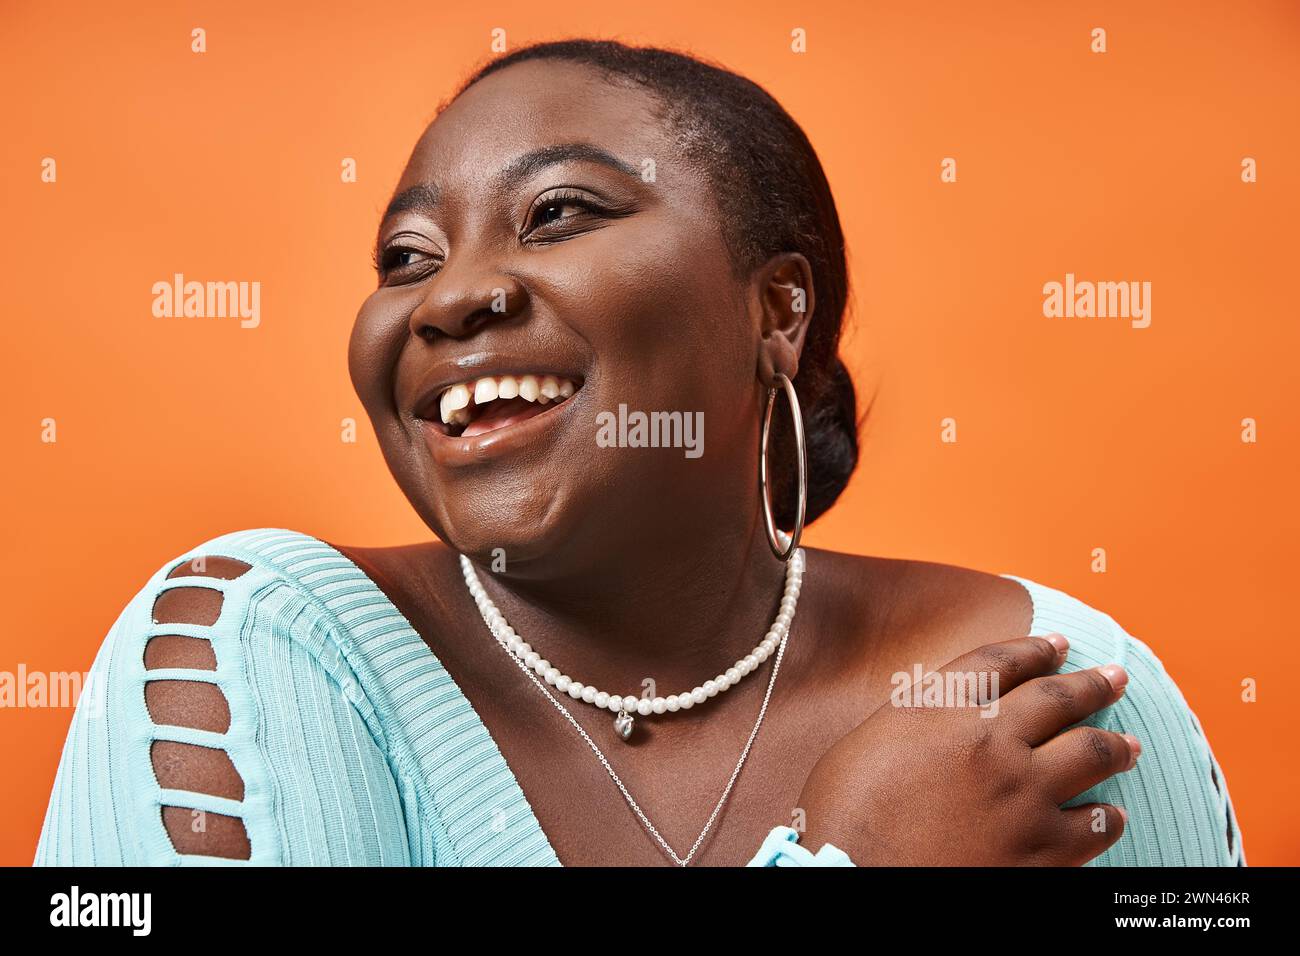 portrait de joyeuse femme afro-américaine de taille plus en manches longues bleues sur fond orange Banque D'Images